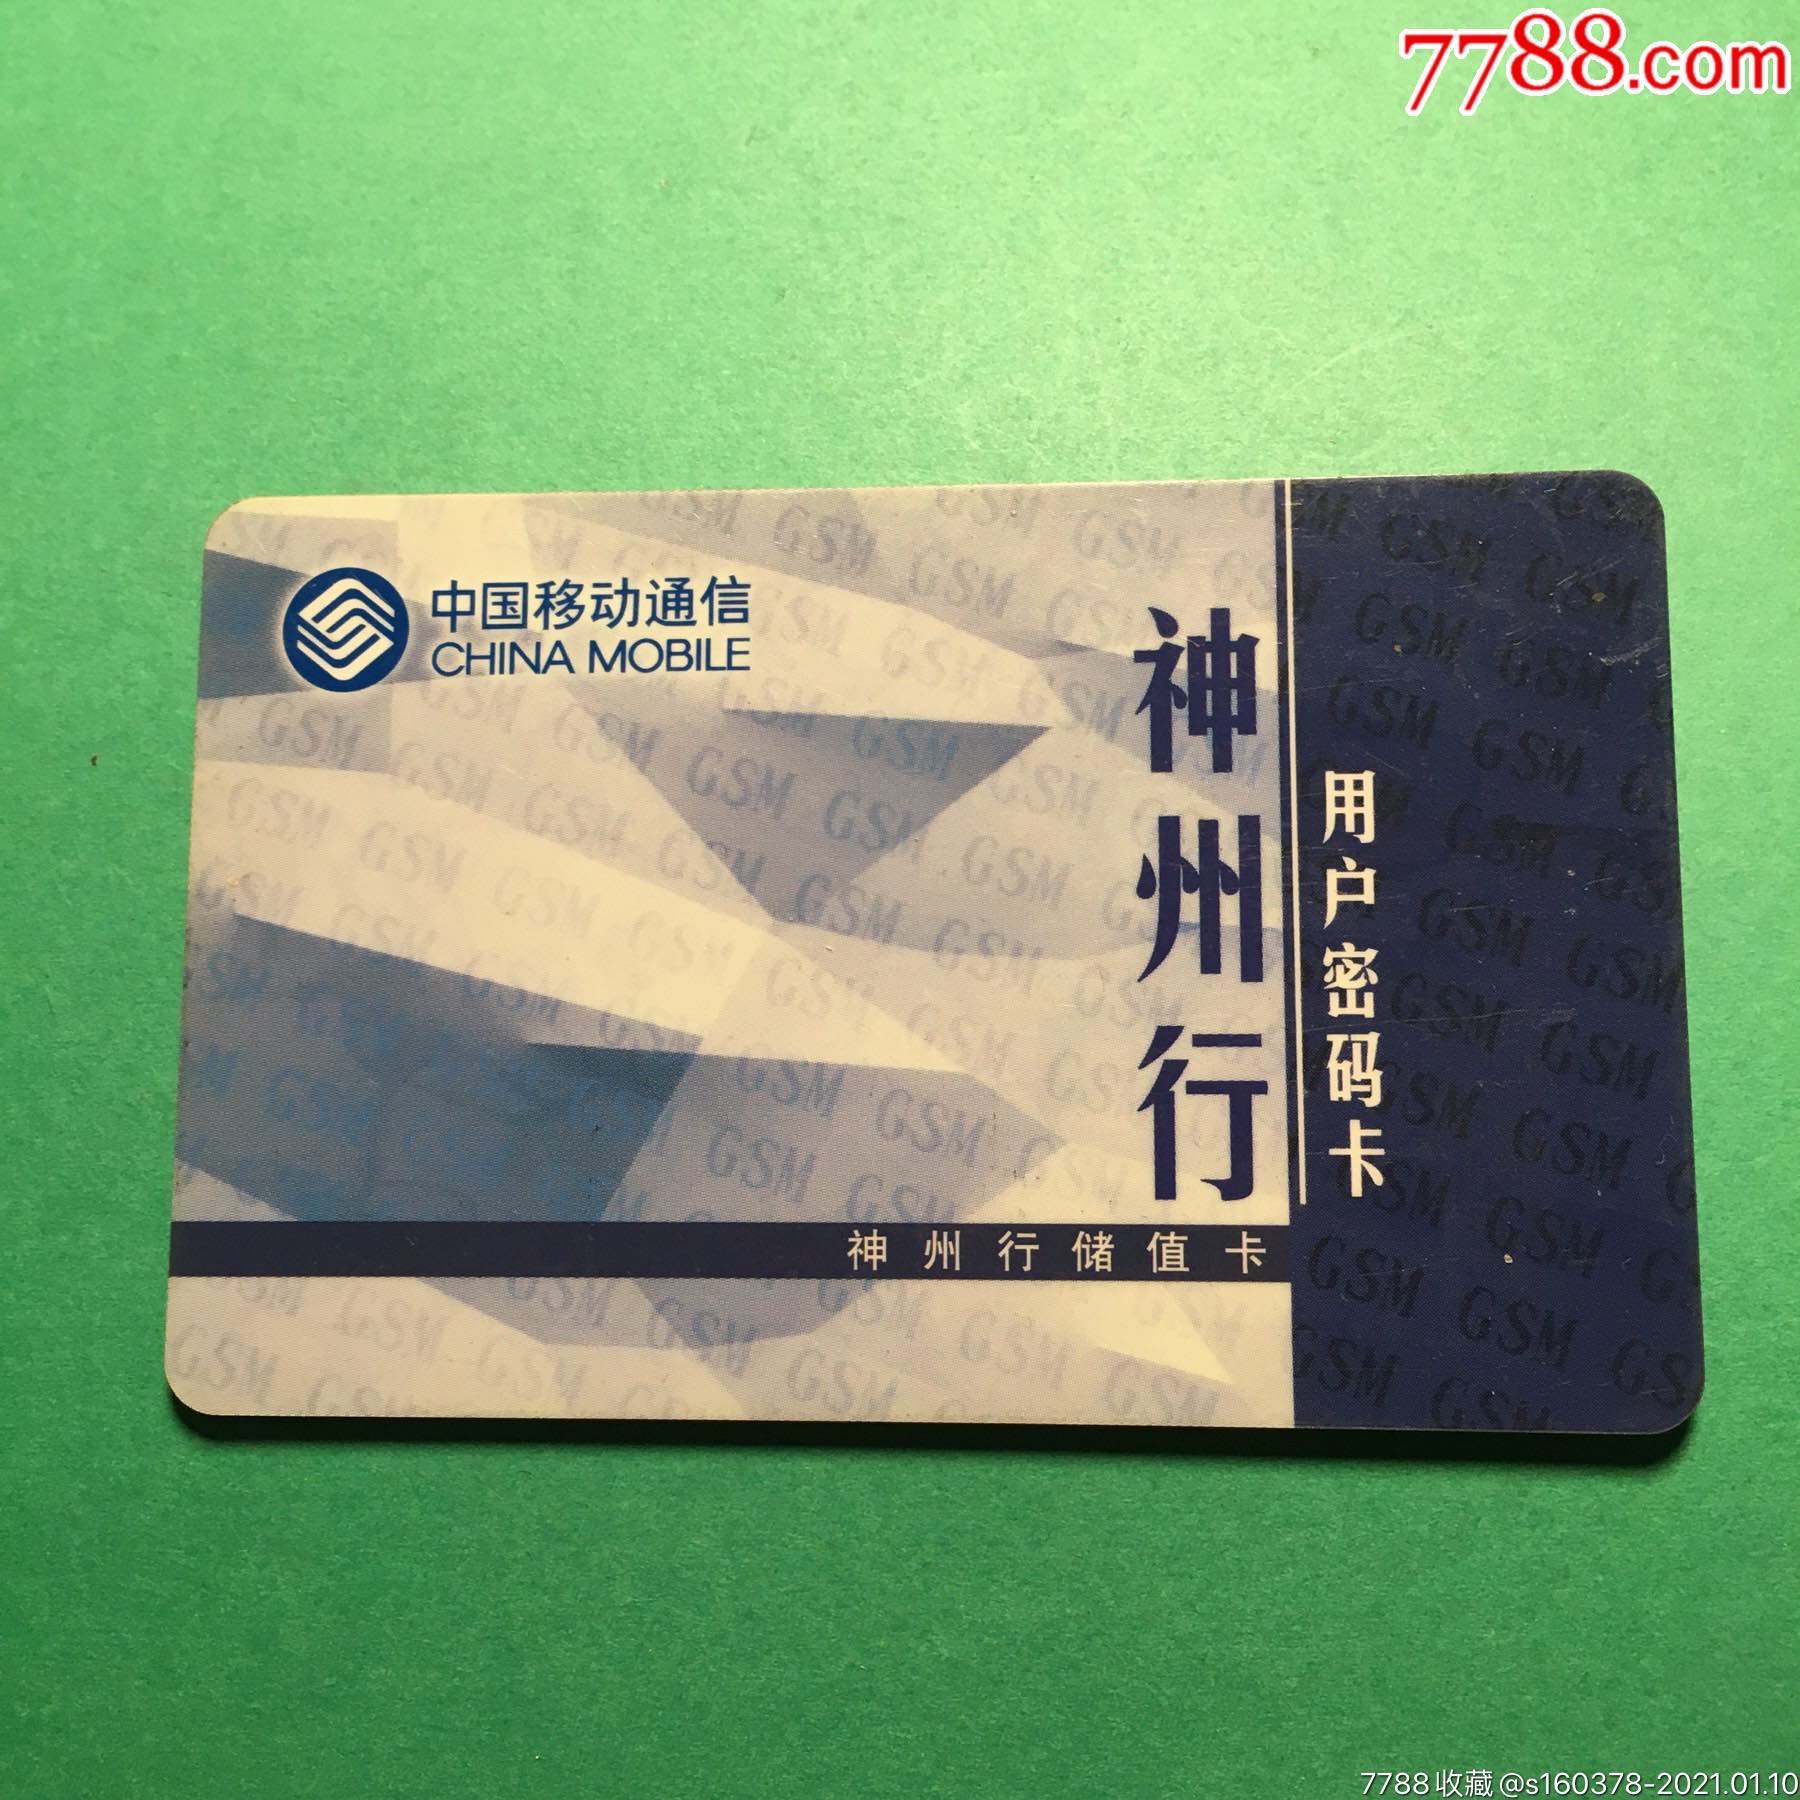 中国移动神州行储值卡用户密码卡